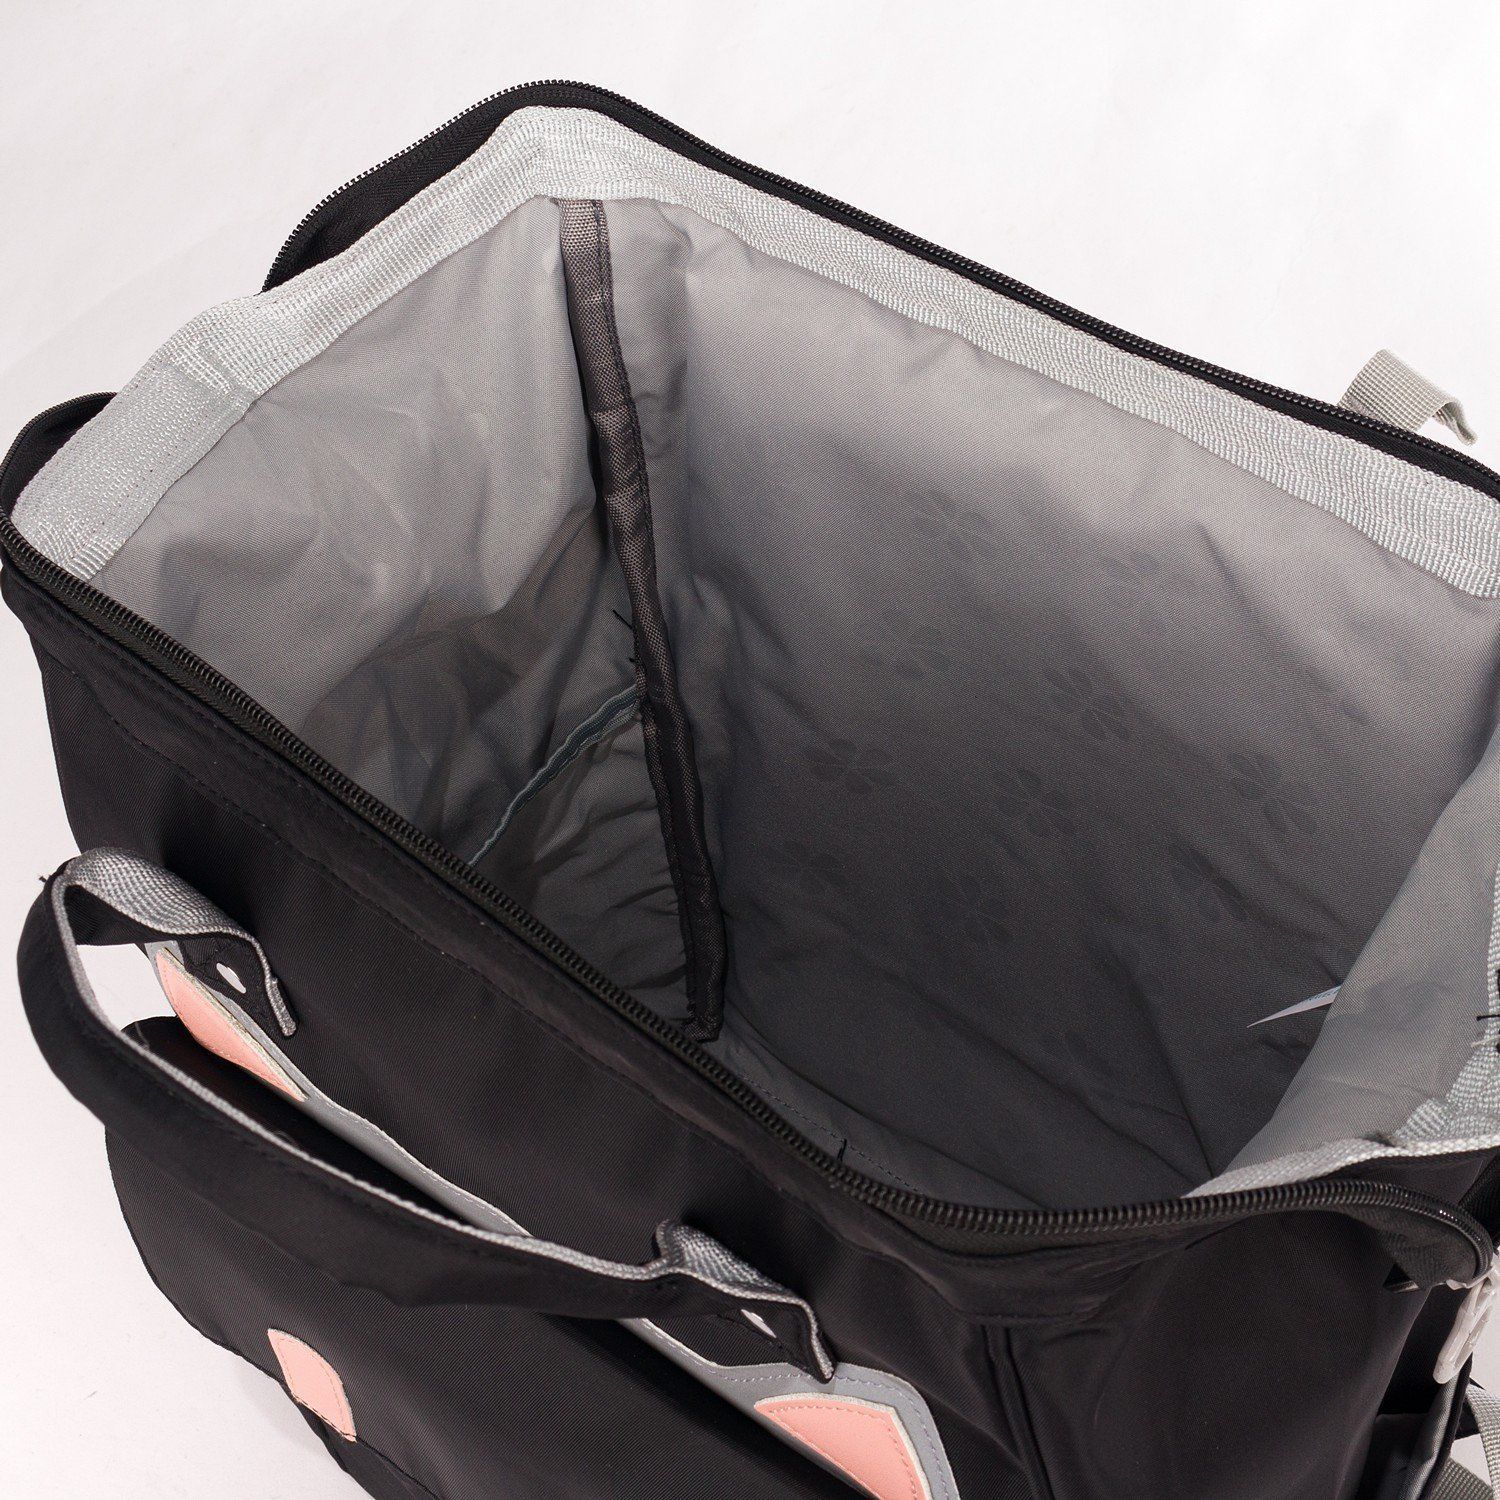 Рюкзак женский городской, черный, с котами, со светоотражающими вставками, объем 11 л